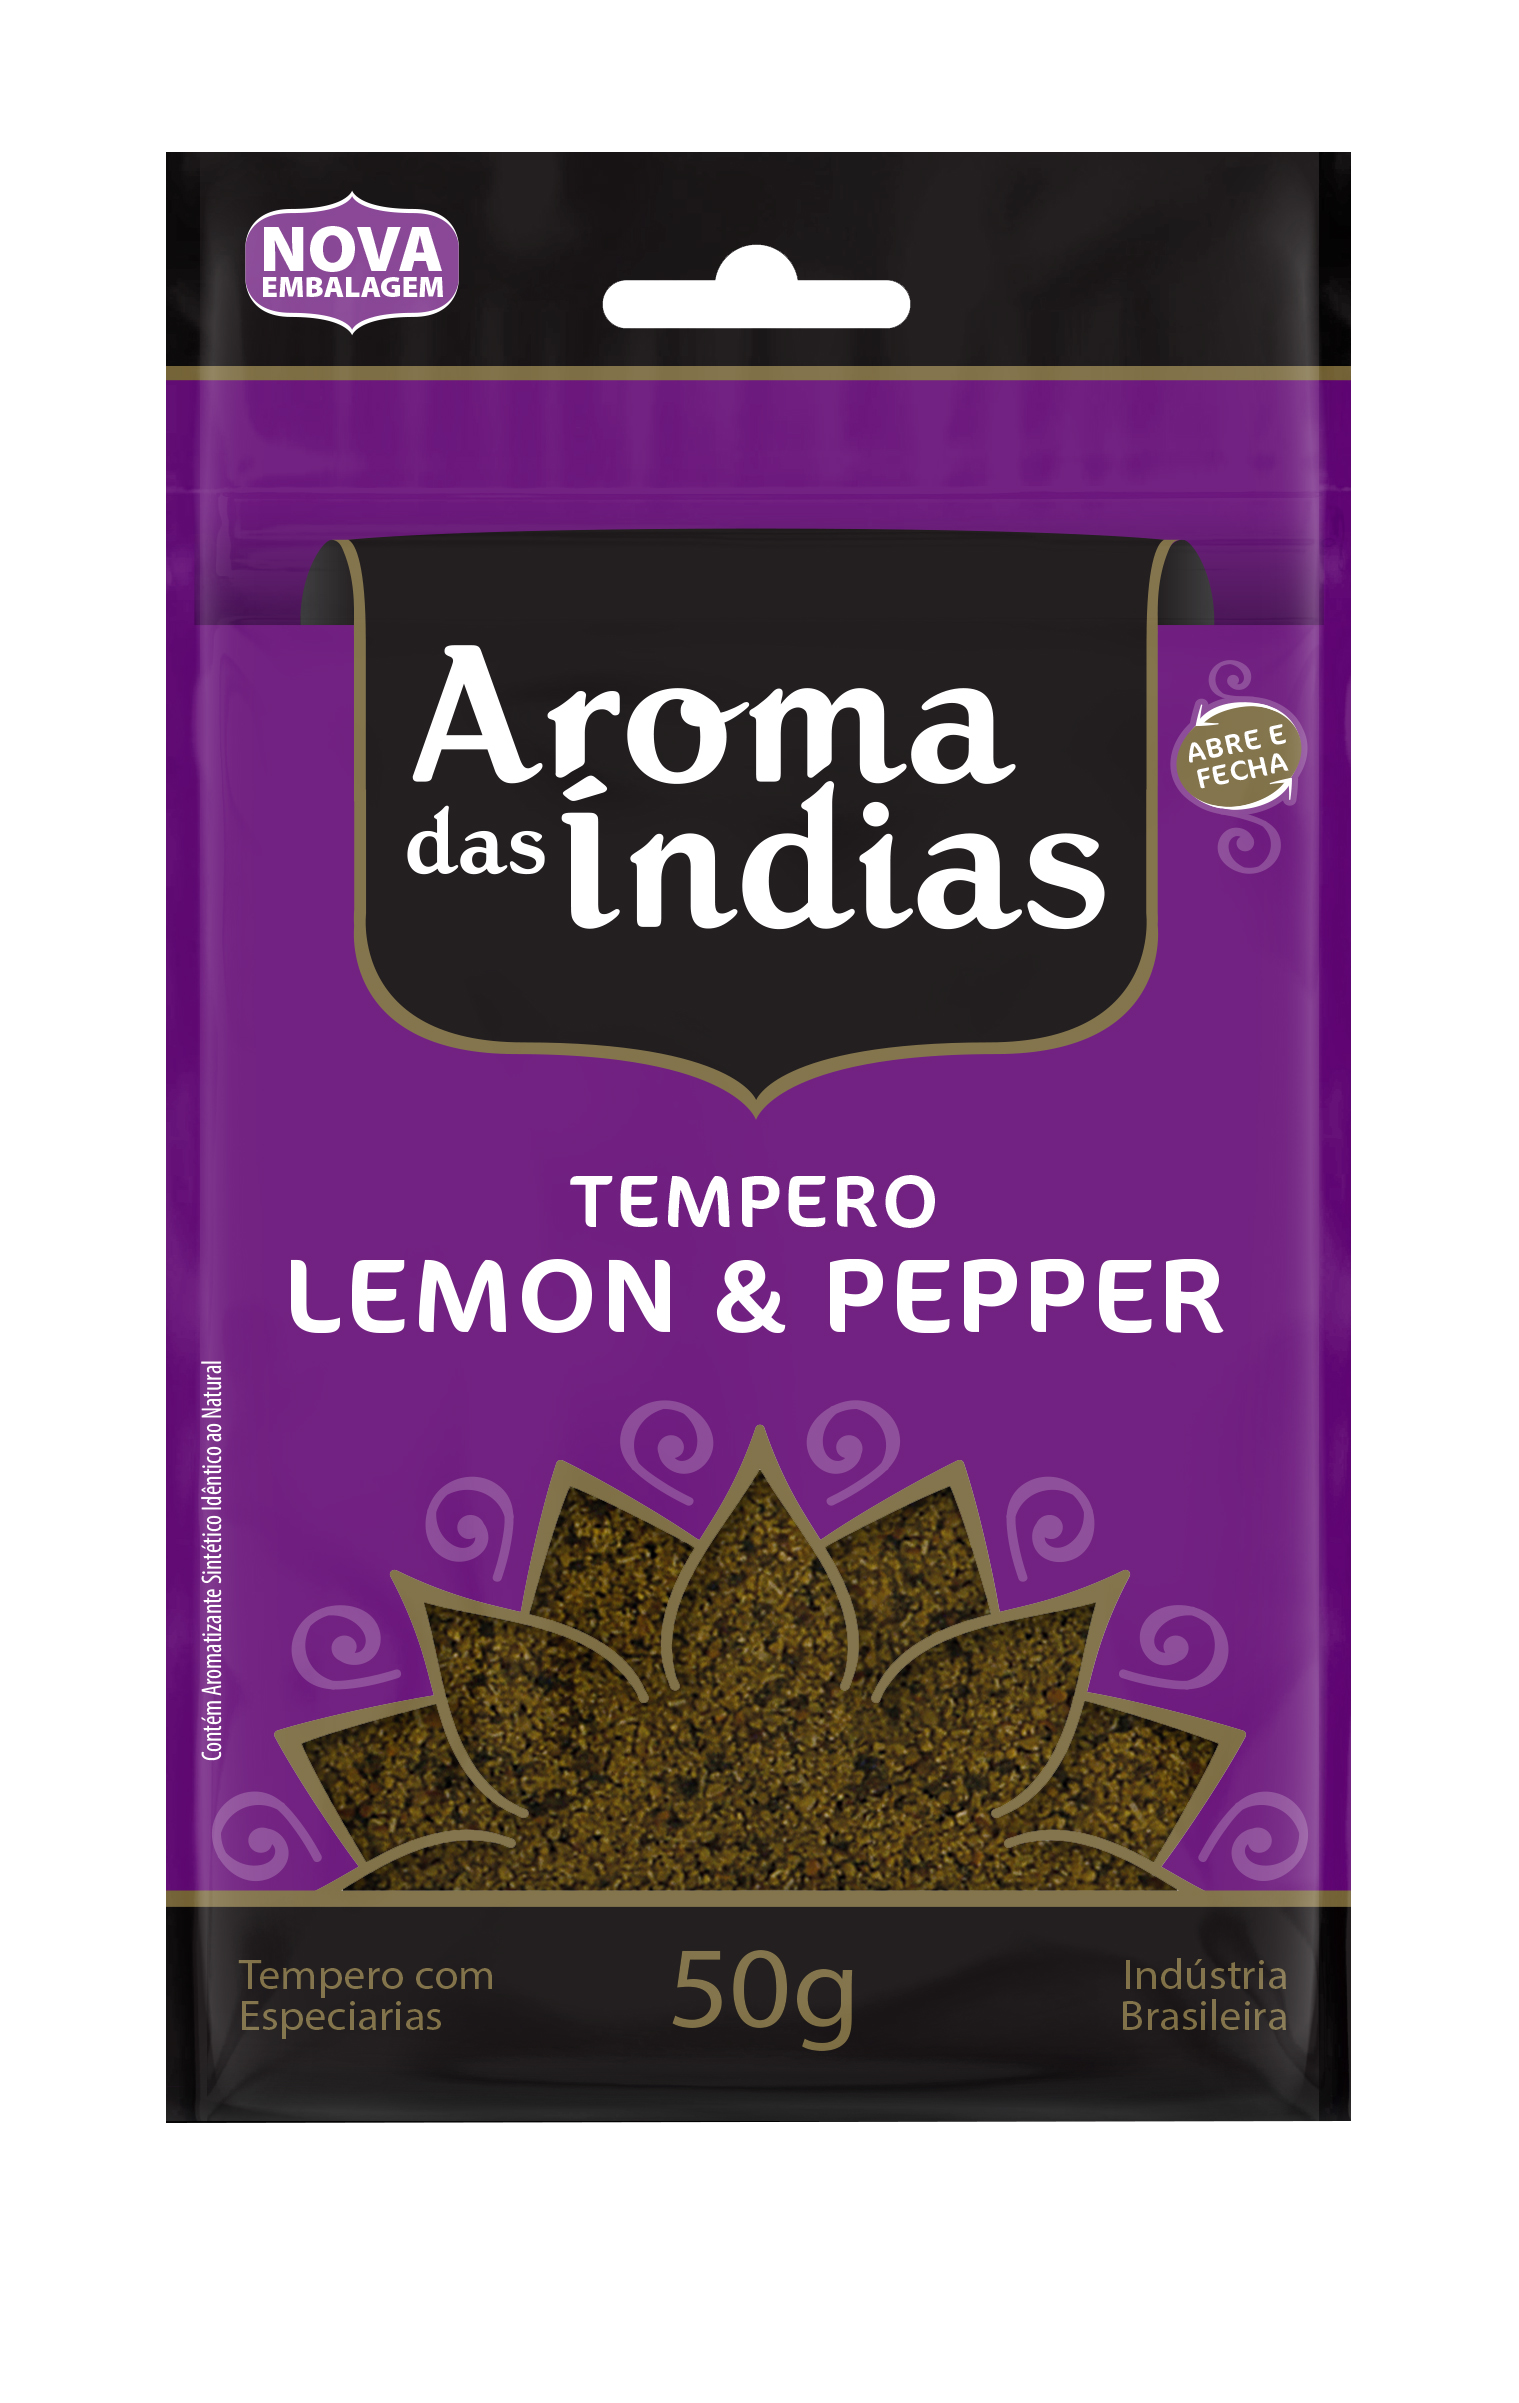 Tempero Siciliano - O Lemon Pepper de Verdade! - Piperis - com sabor tudo é  melhor